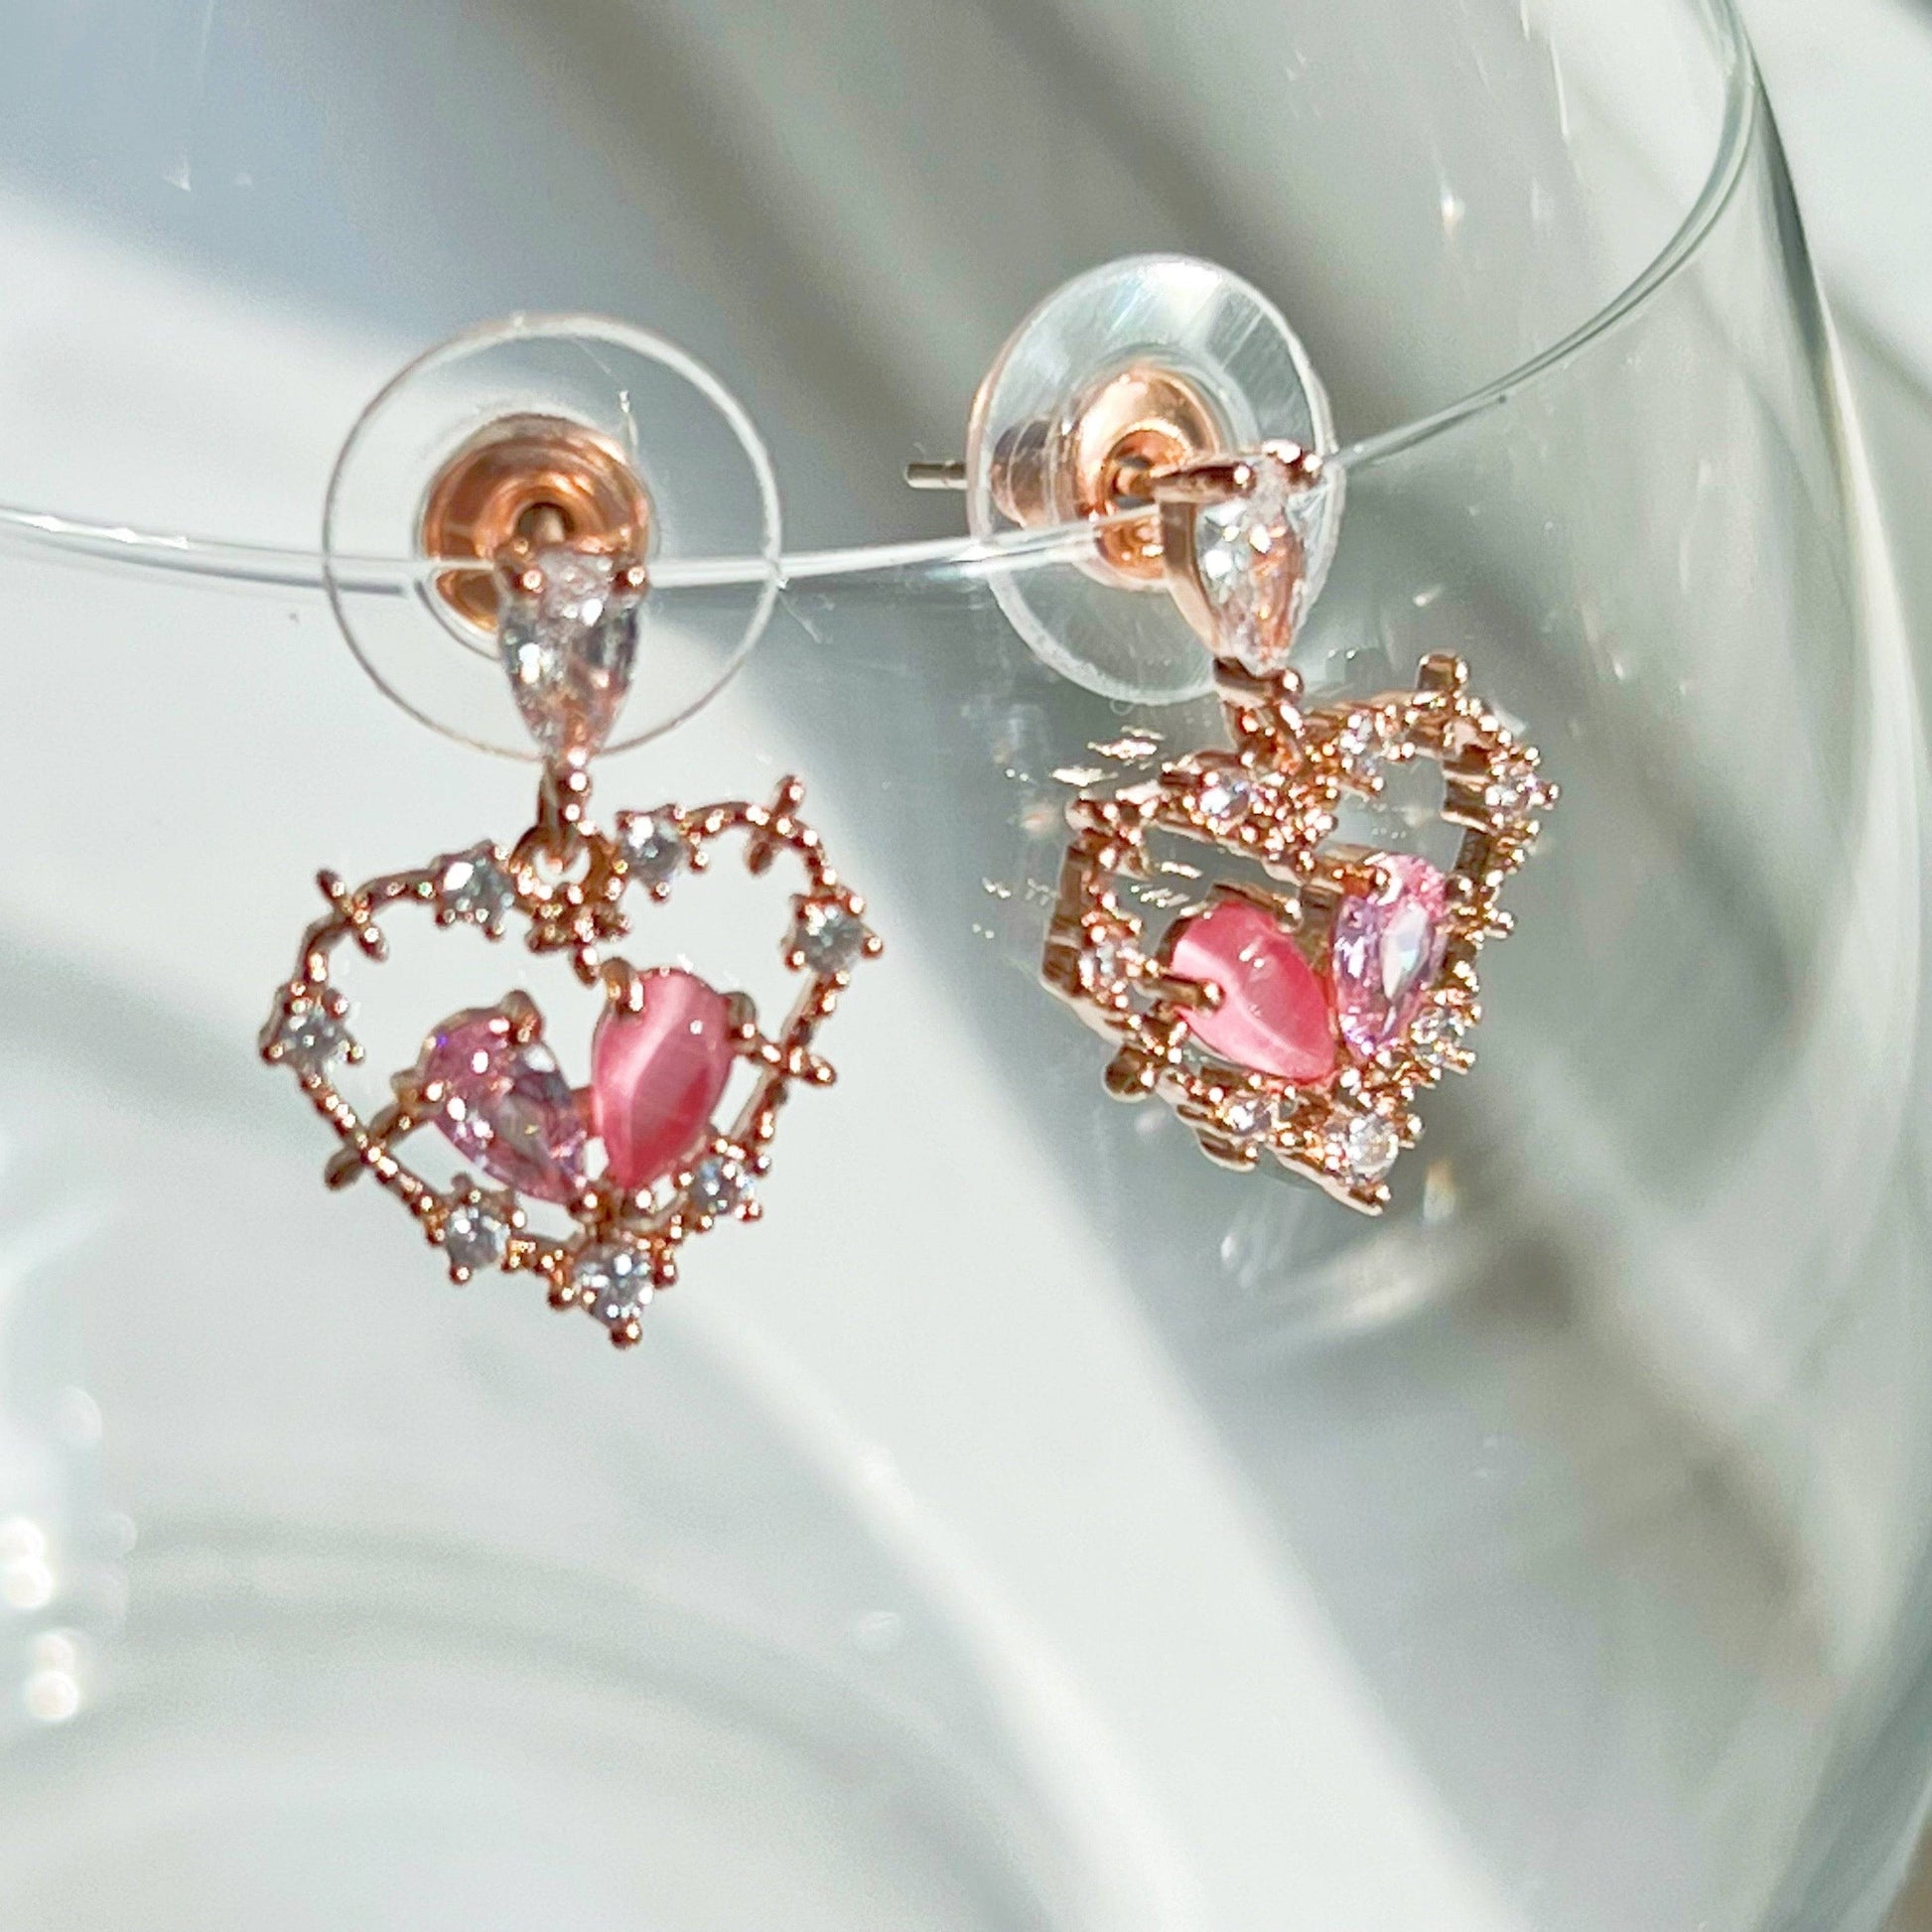 Pink Crystal Heart Drop Earrings - Rose Gold Heart Shape Sterling Silver Studs-Ninaouity